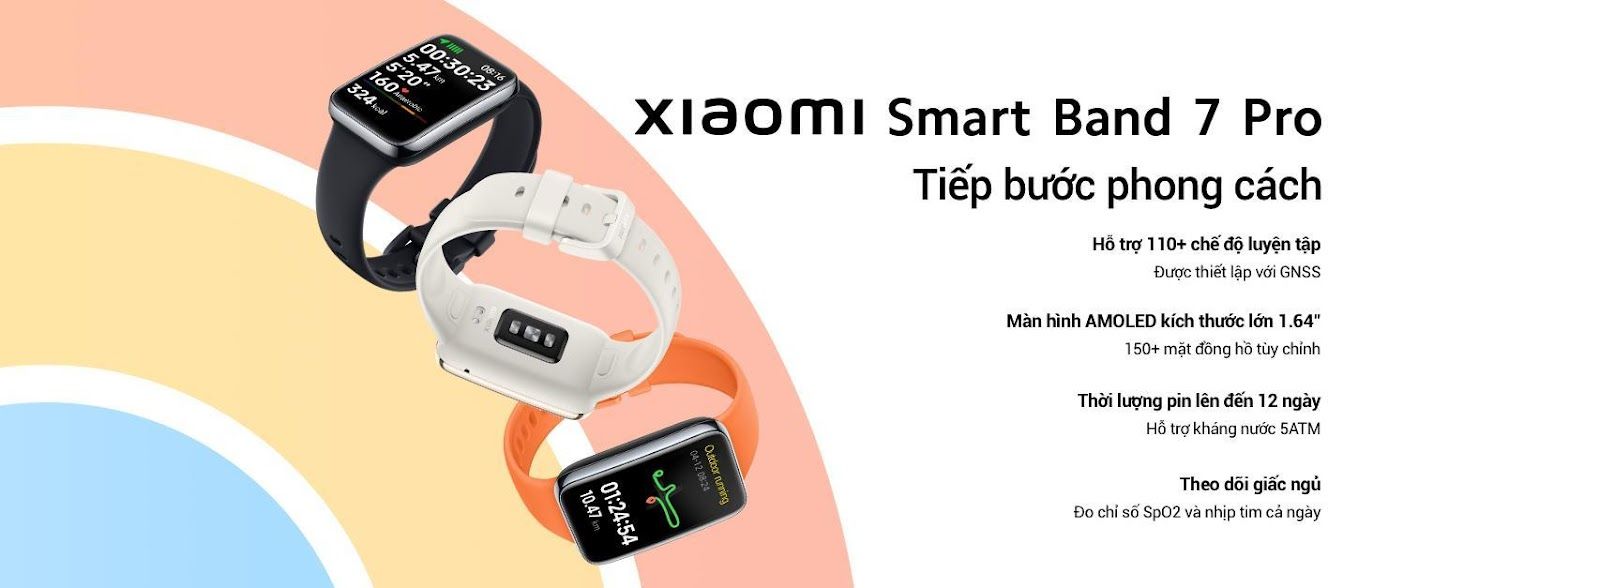 Xiaomi bán Smart Band 7 Pro giá 1,9 triệu đồng